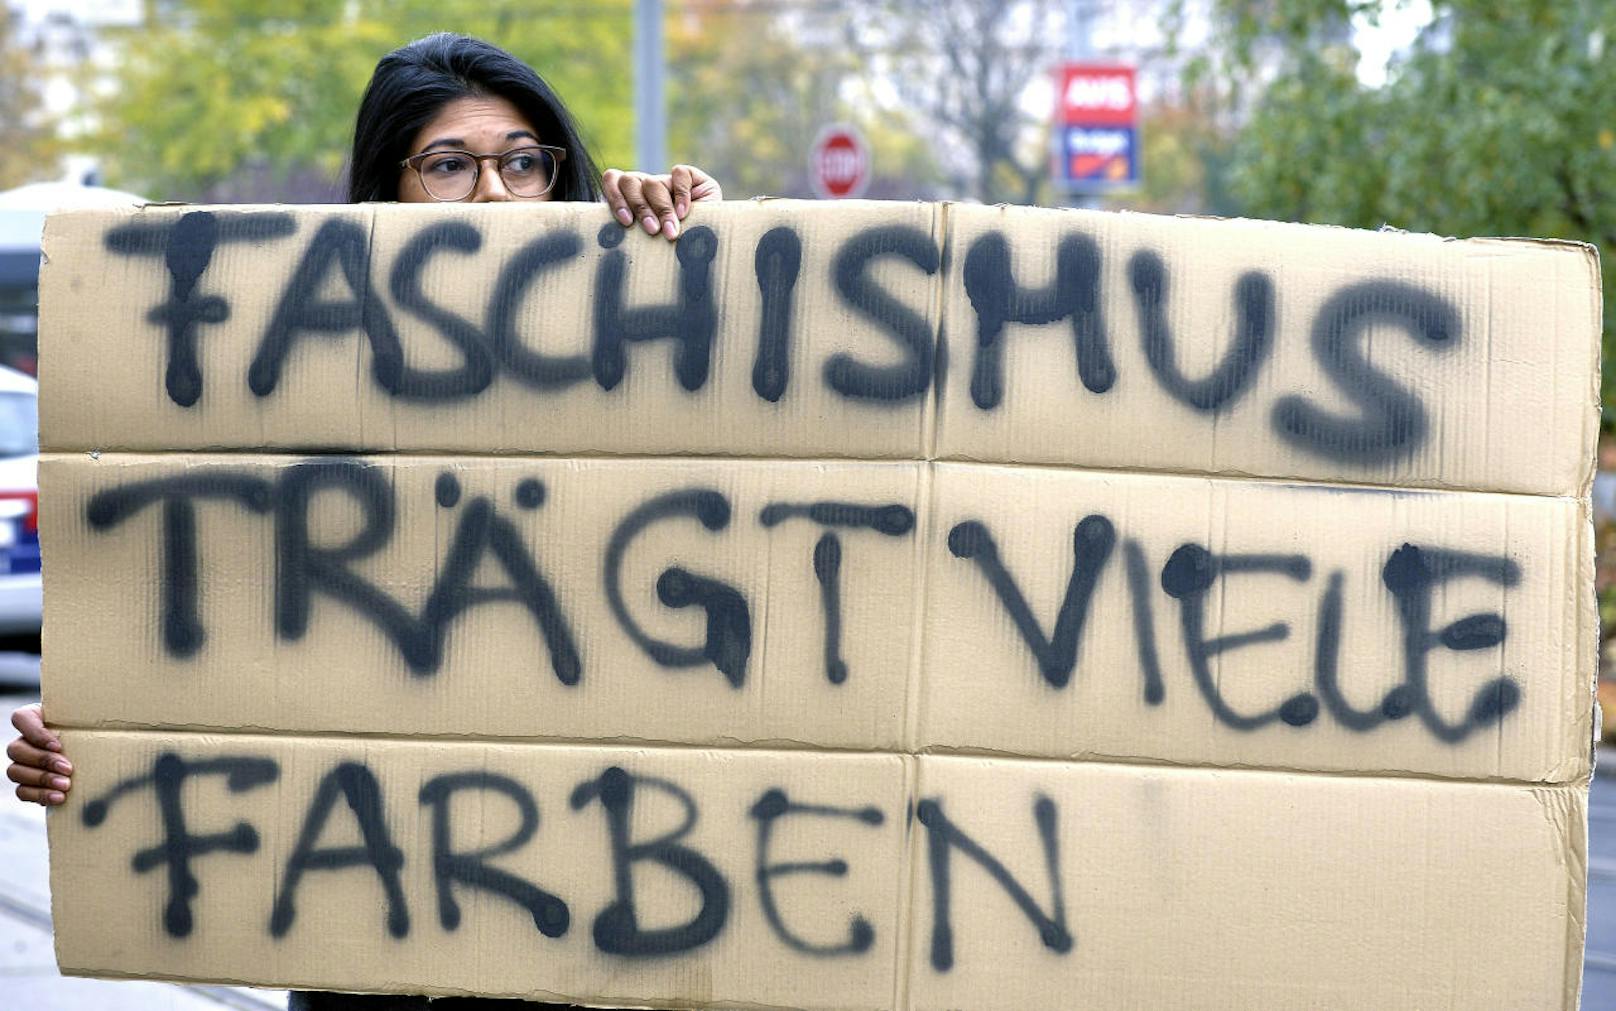 Die Organisation Linkswende hat zu einer Demo gegen deutschnationale Burschenschafter, die für die FPÖ im Nationalrat sitzen, vor dem Parlament gerufen. Mehrere hundert Menschen nahmen teil.